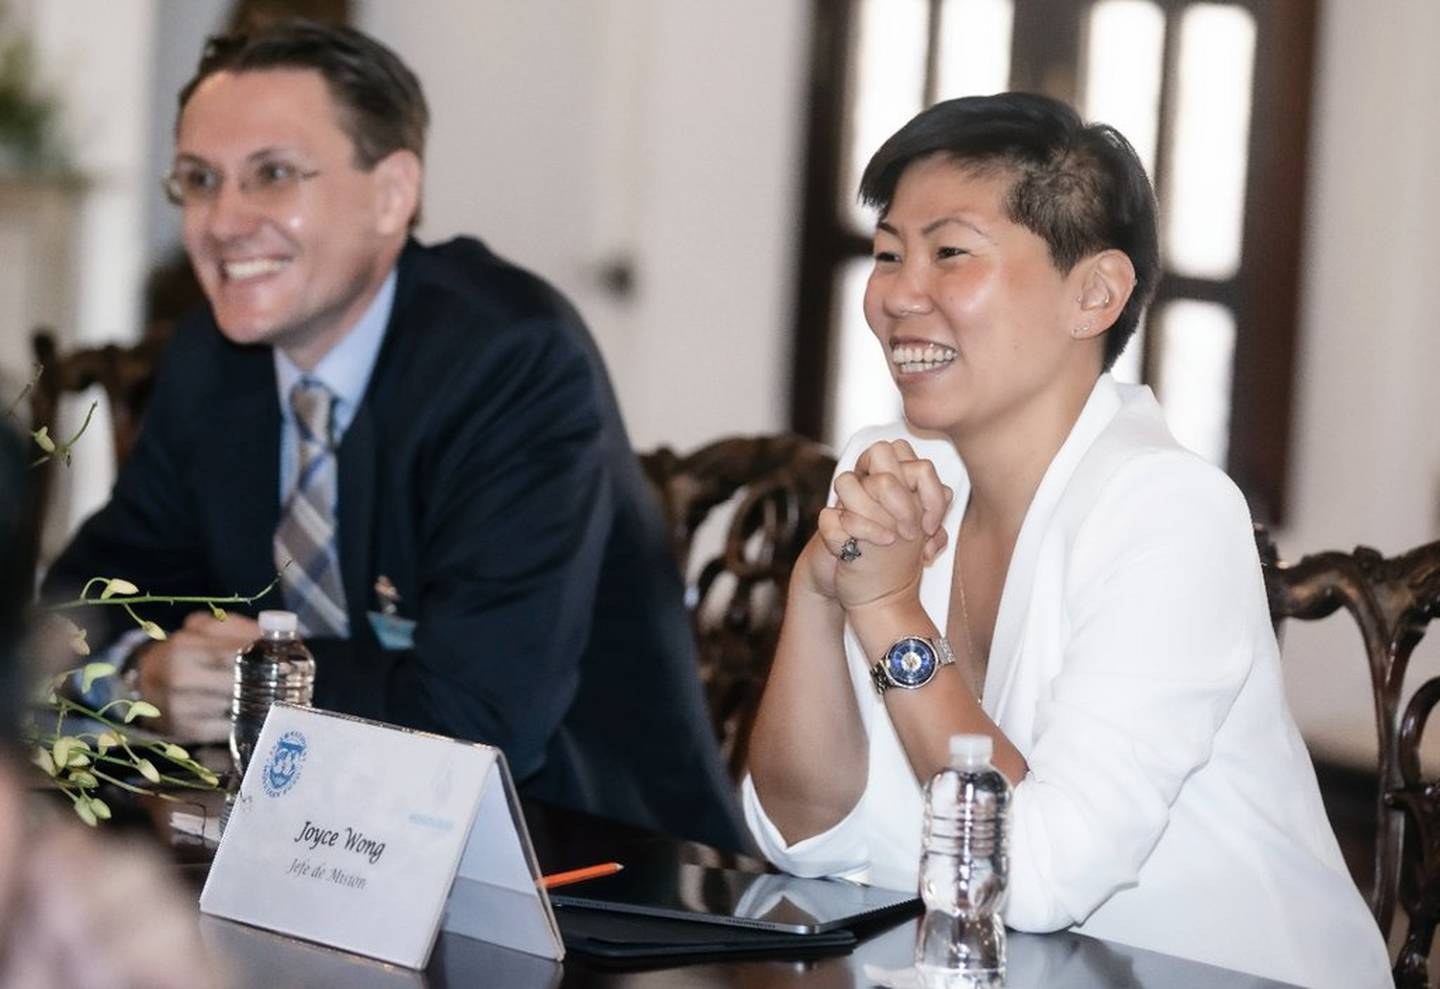 El equipo técnico del FMI de visita en Honduras es dirigido por Joyce Wong y apoyado por el representante residente Christian Henn.